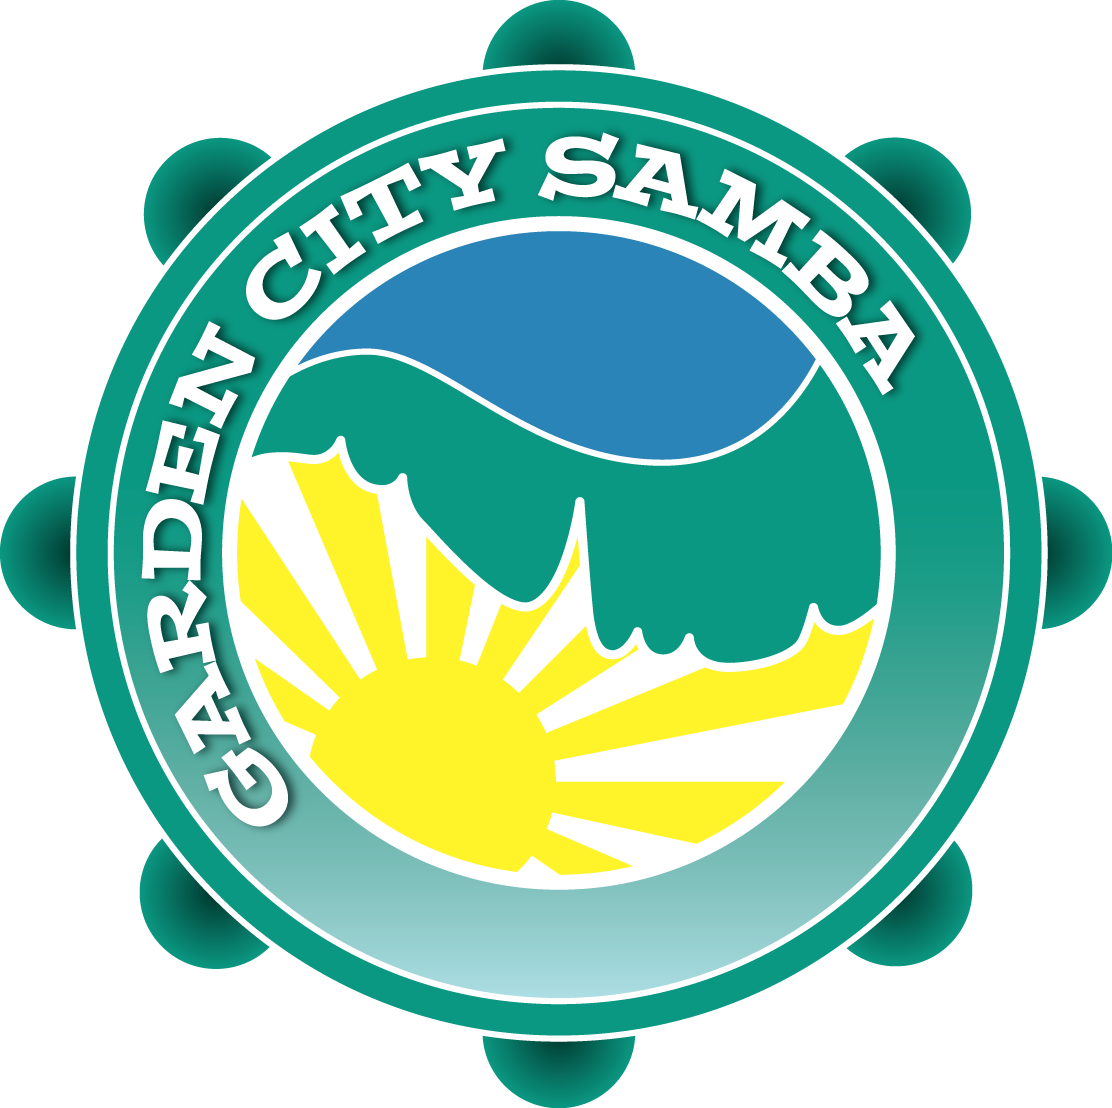 GCS Calendar Garden City Samba